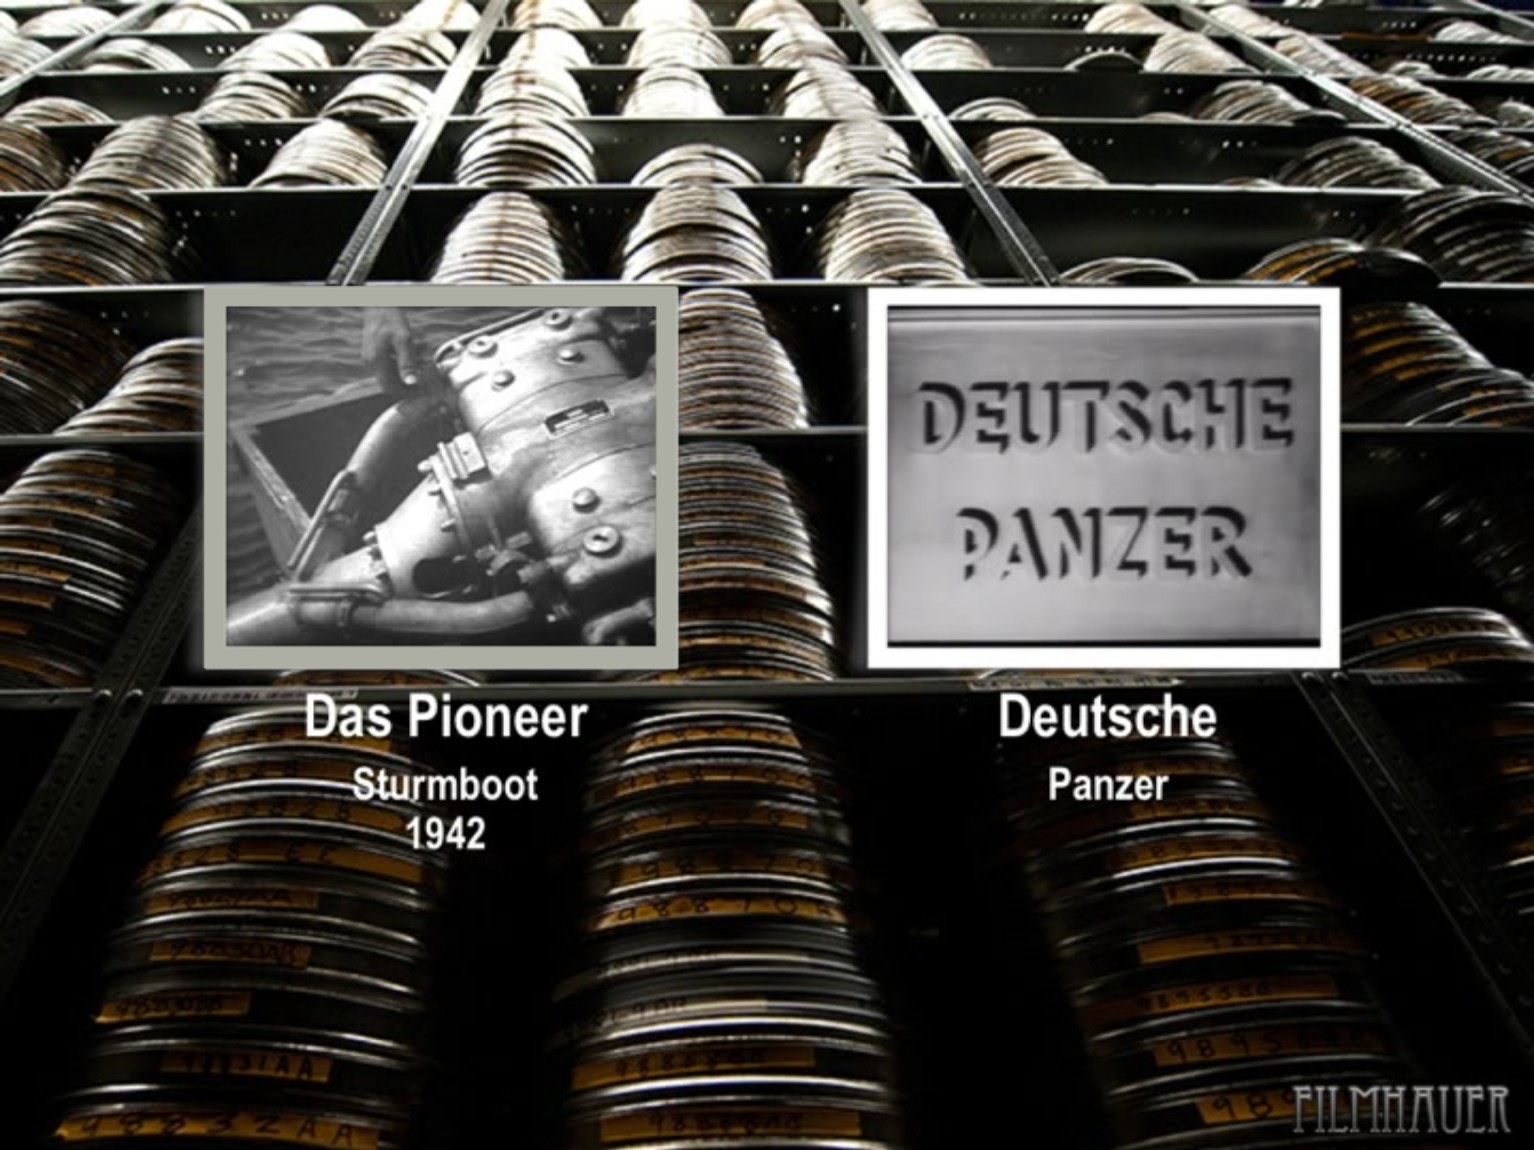 DAS PIONIER STURMBOOT 1942 - DEUTSCHE PANZER 1939